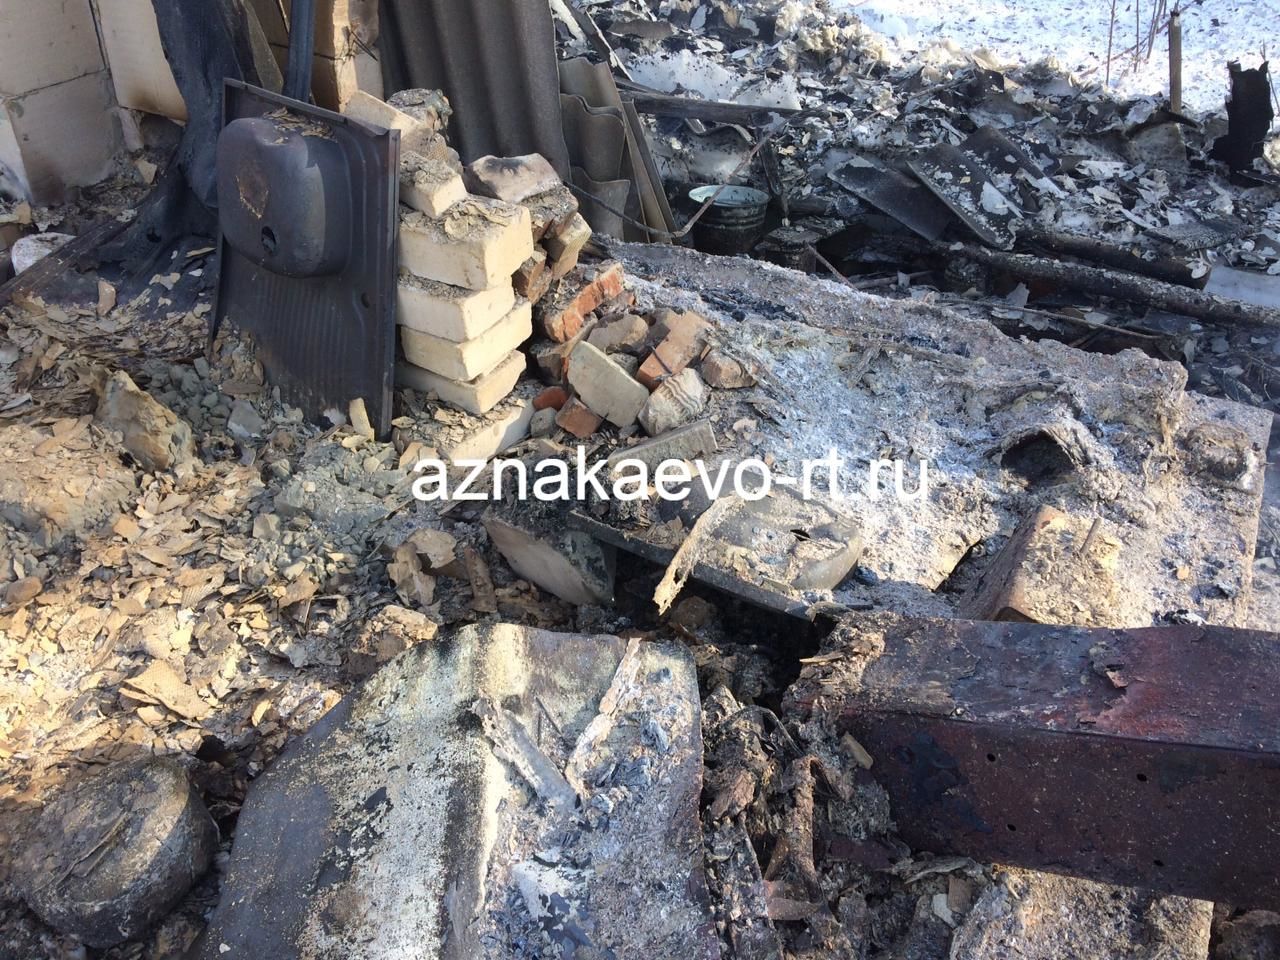 Азнакай районында 55 яшьлек ир янгында һәлак булган